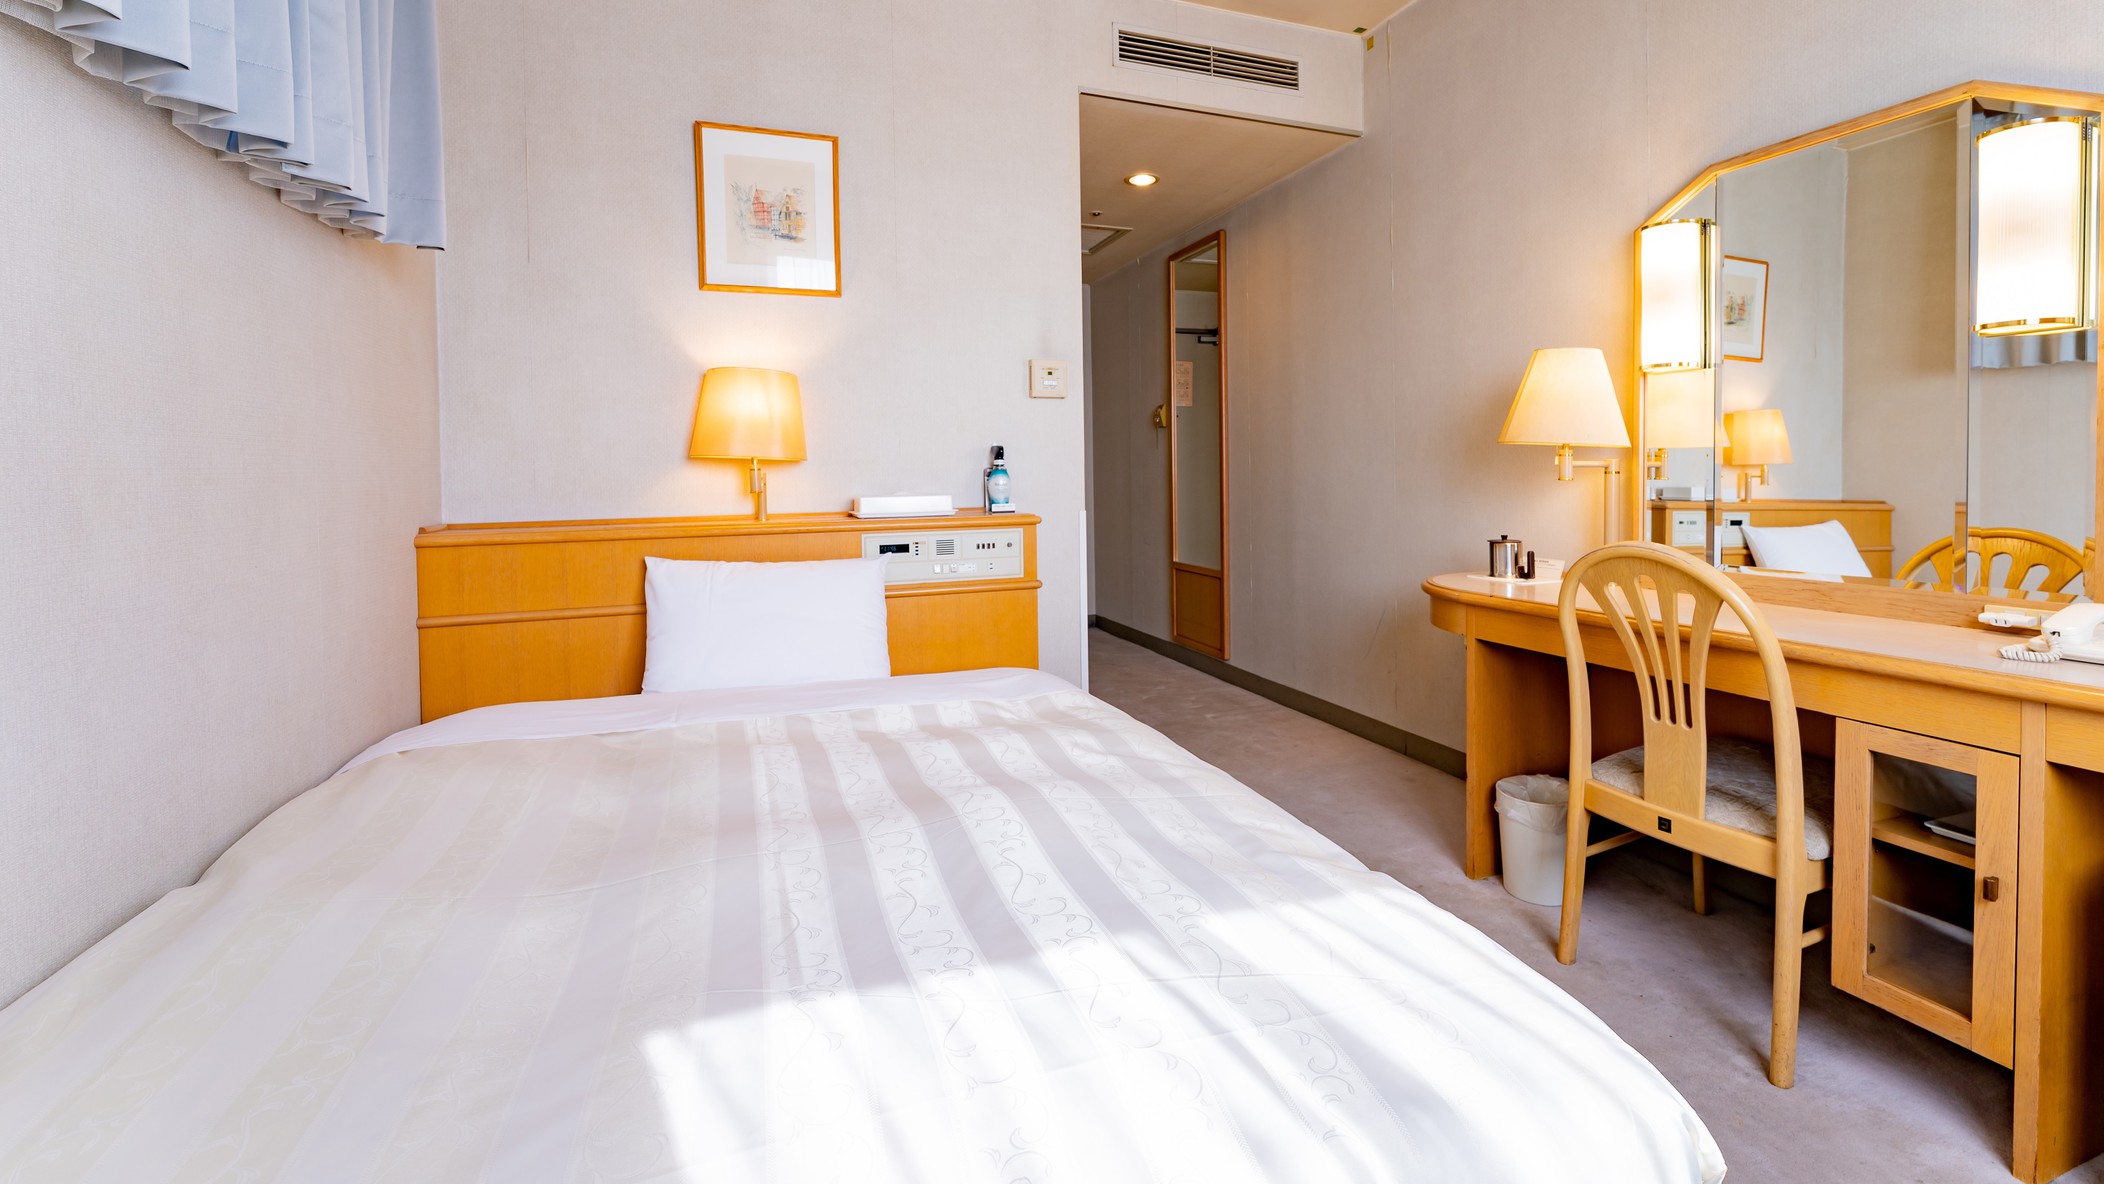 シングルルームベッドサイズは135cmお部屋の広さは18㎡加湿空気清浄機